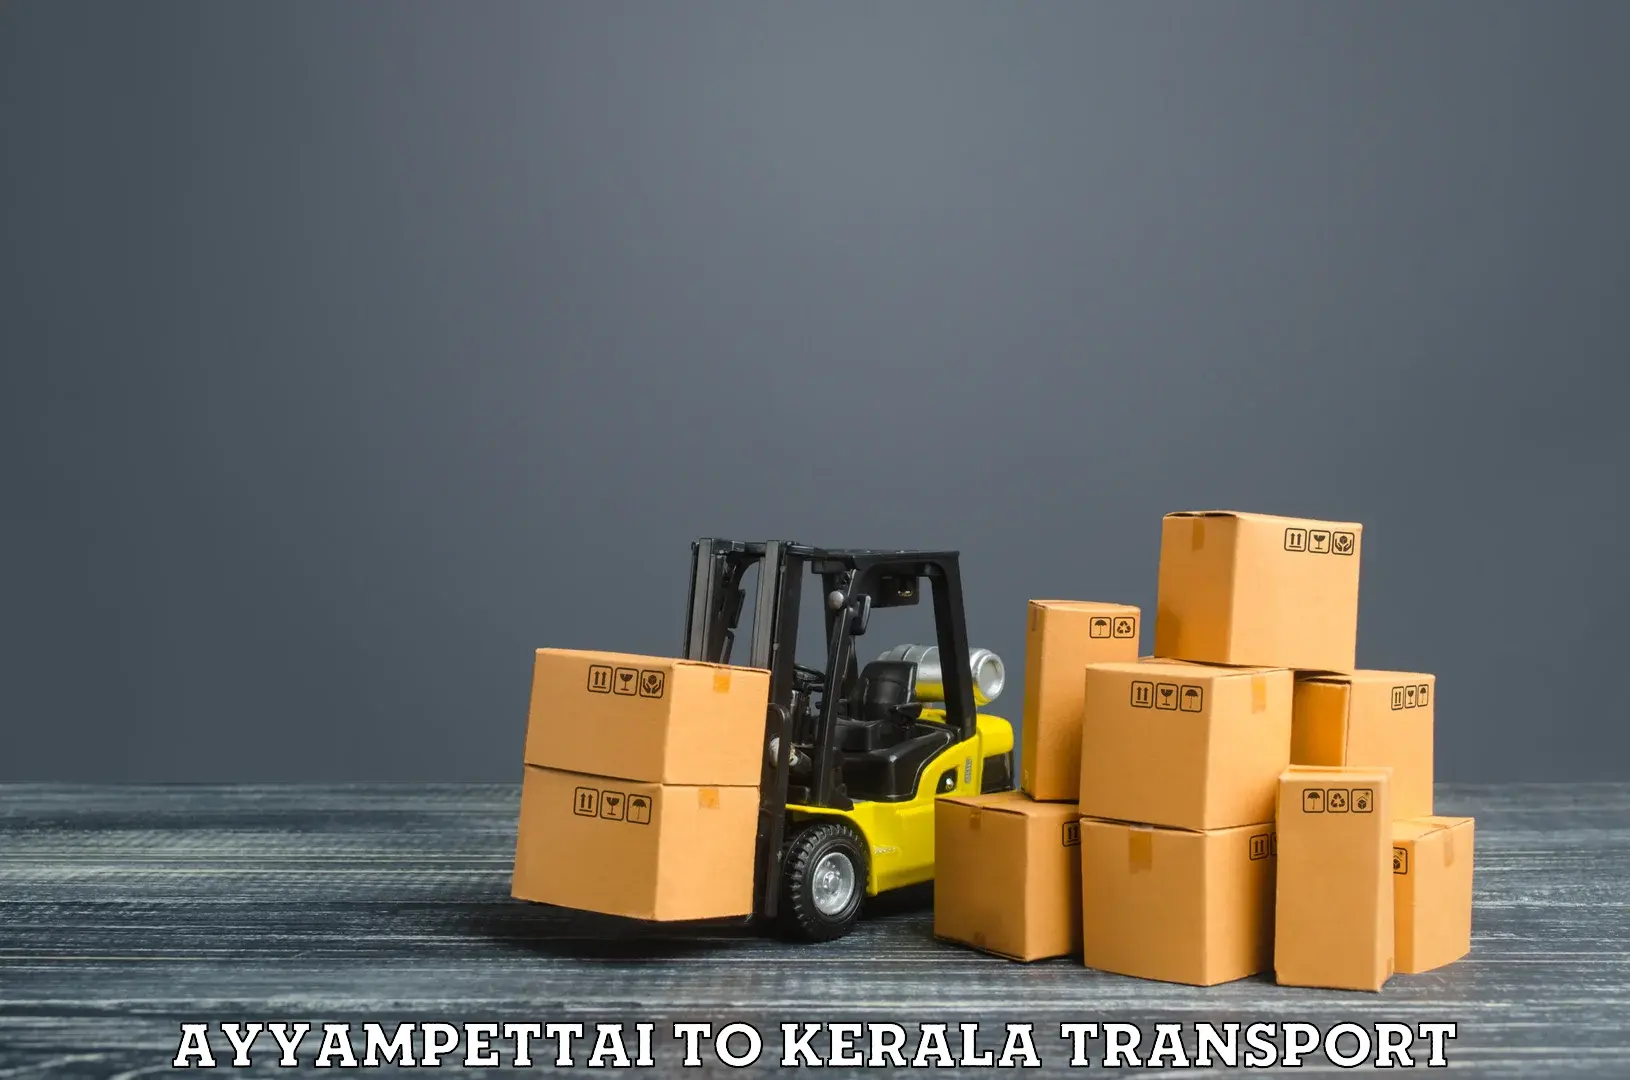 All India transport service Ayyampettai to Karunagappally